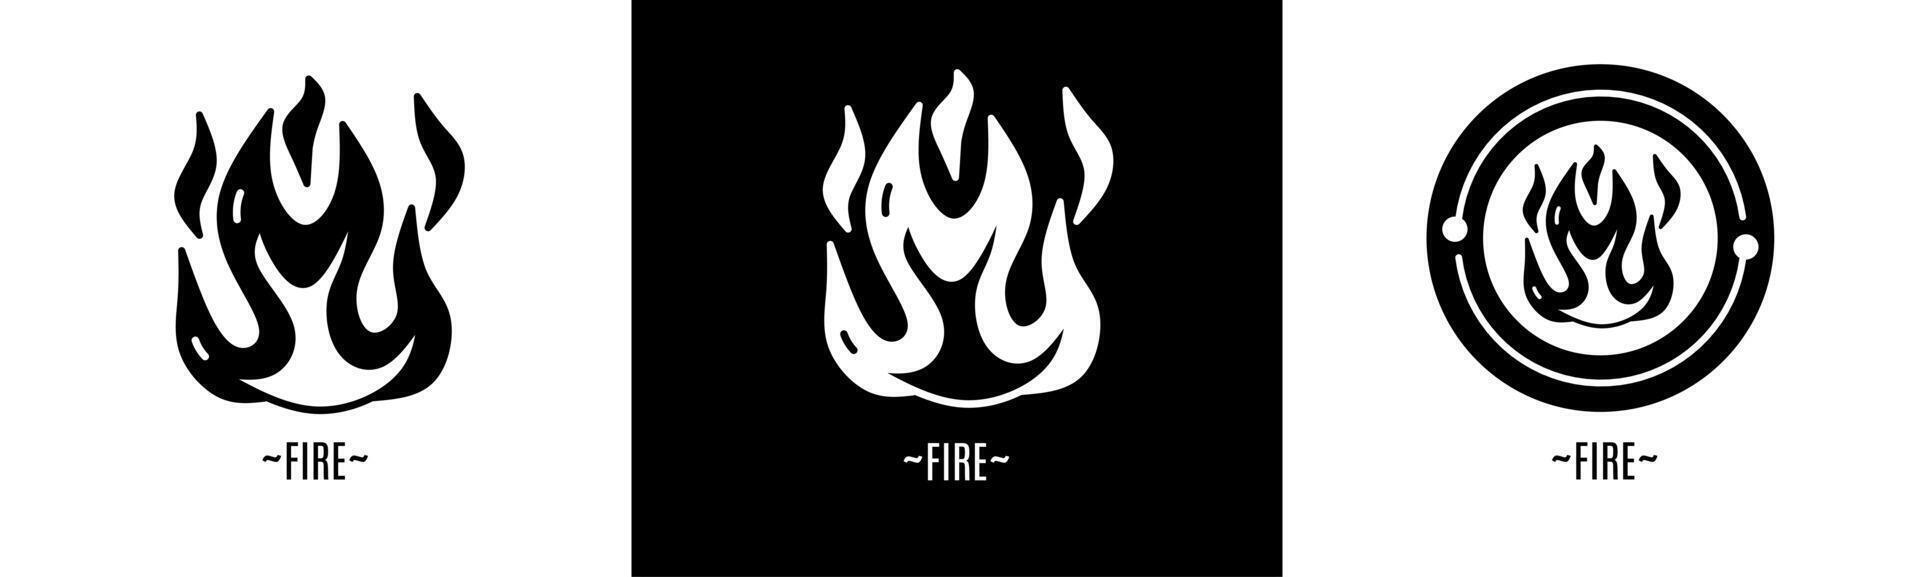 Feuer Logo Satz. Sammlung von schwarz und Weiß Logos. Lager Vektor. vektor